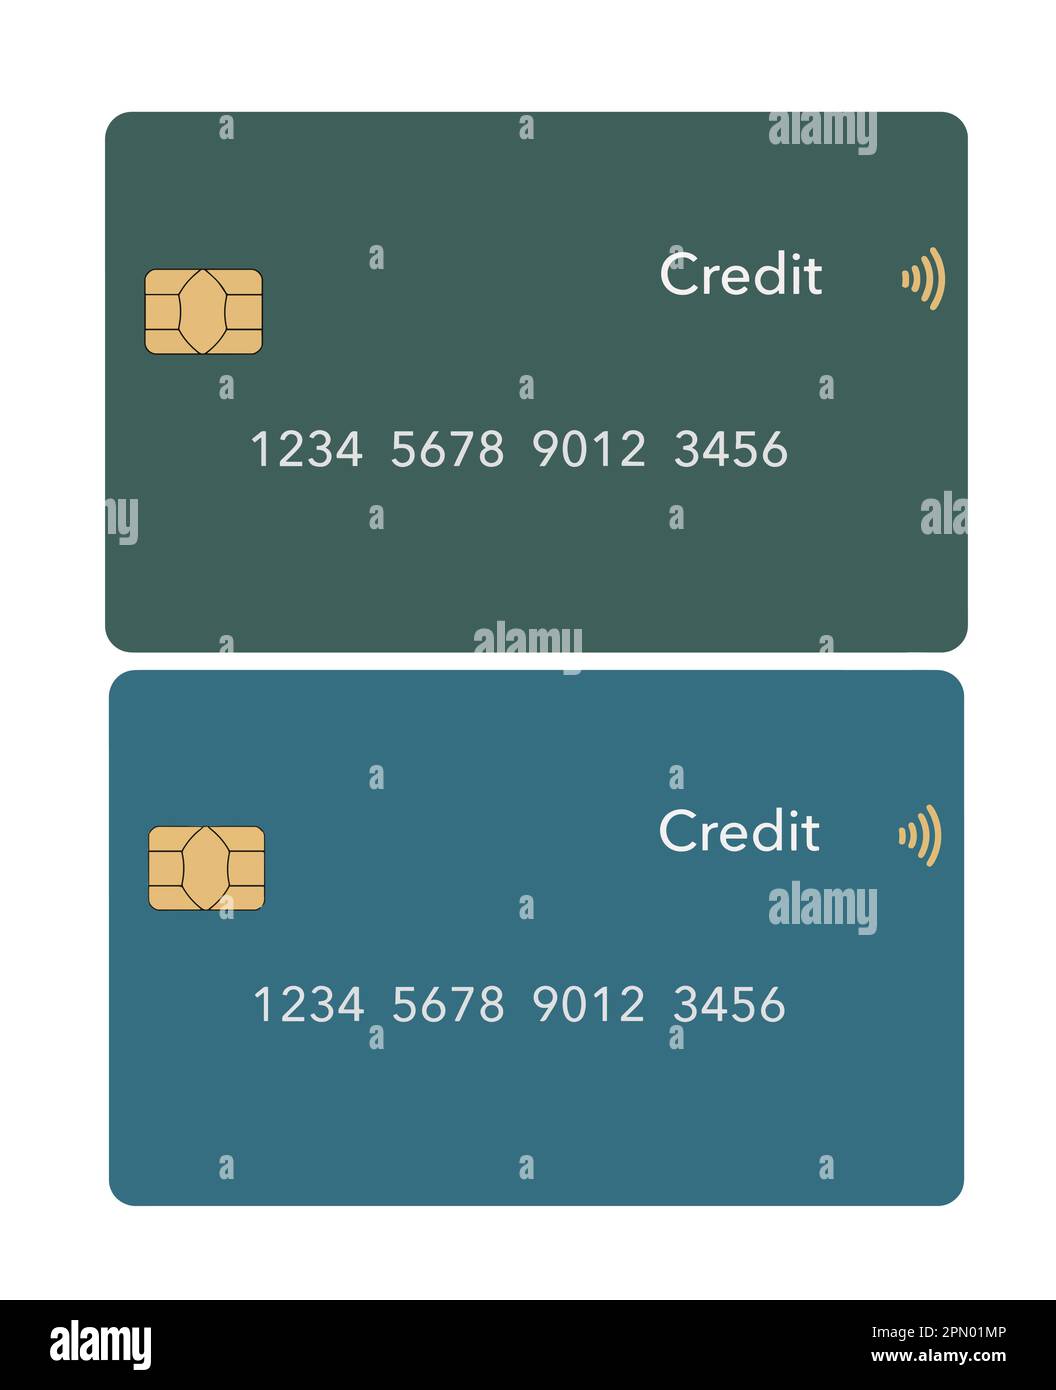 Hier sehen Sie eine realistische falsche Kreditkarte oder Debitkarte im Vektorformat. Stock Vektor